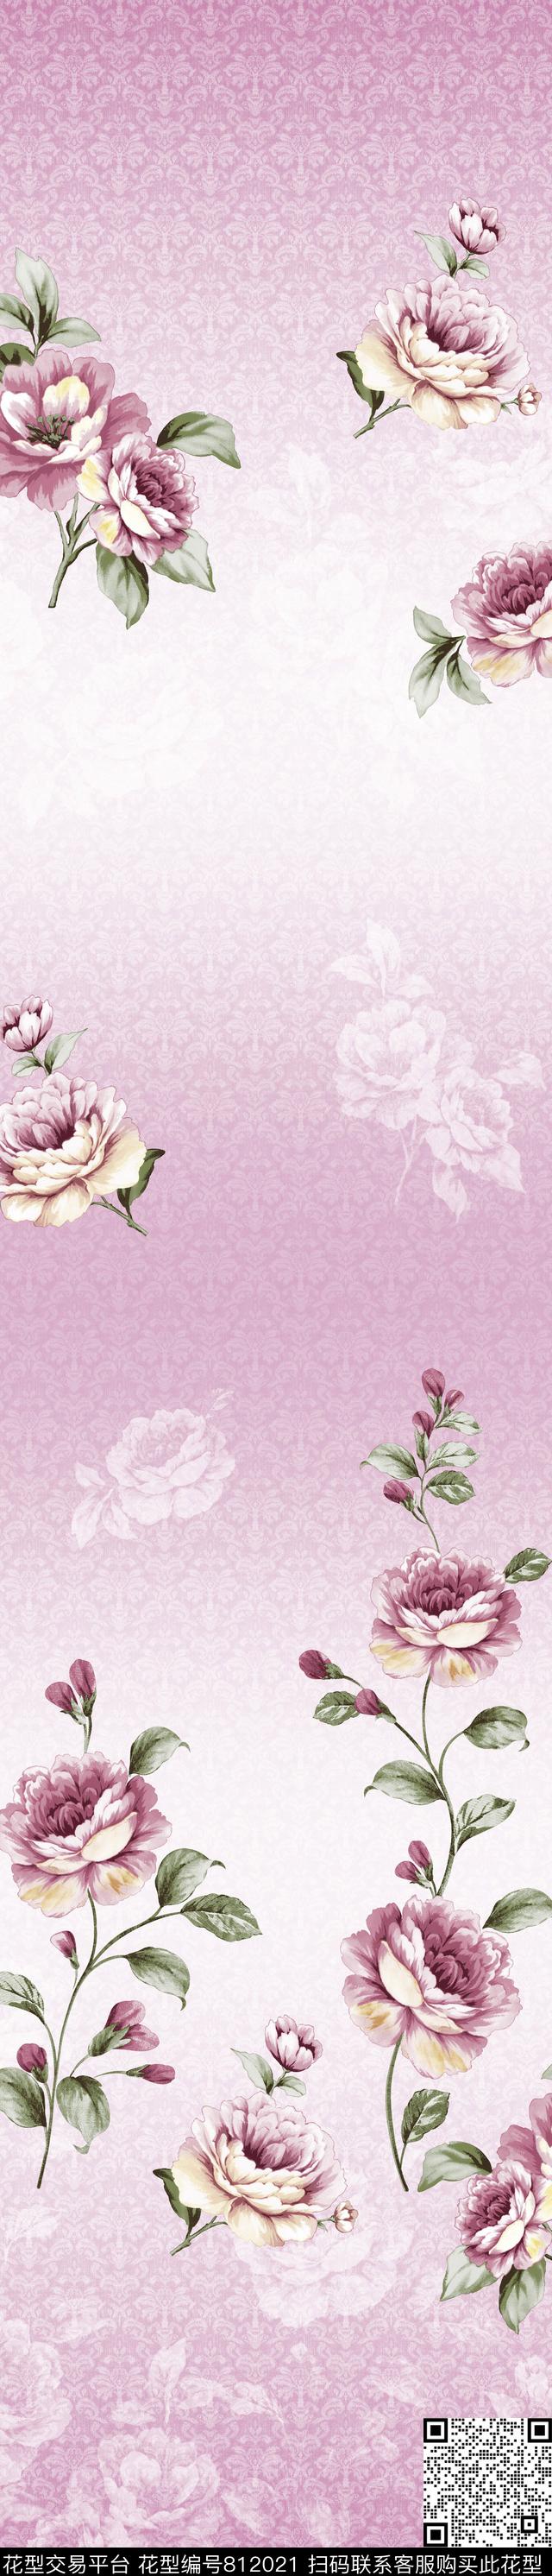 YJH170323c.jpg - 812021 - 牡丹 花卉 窗帘 - 传统印花花型 － 窗帘花型设计 － 瓦栏